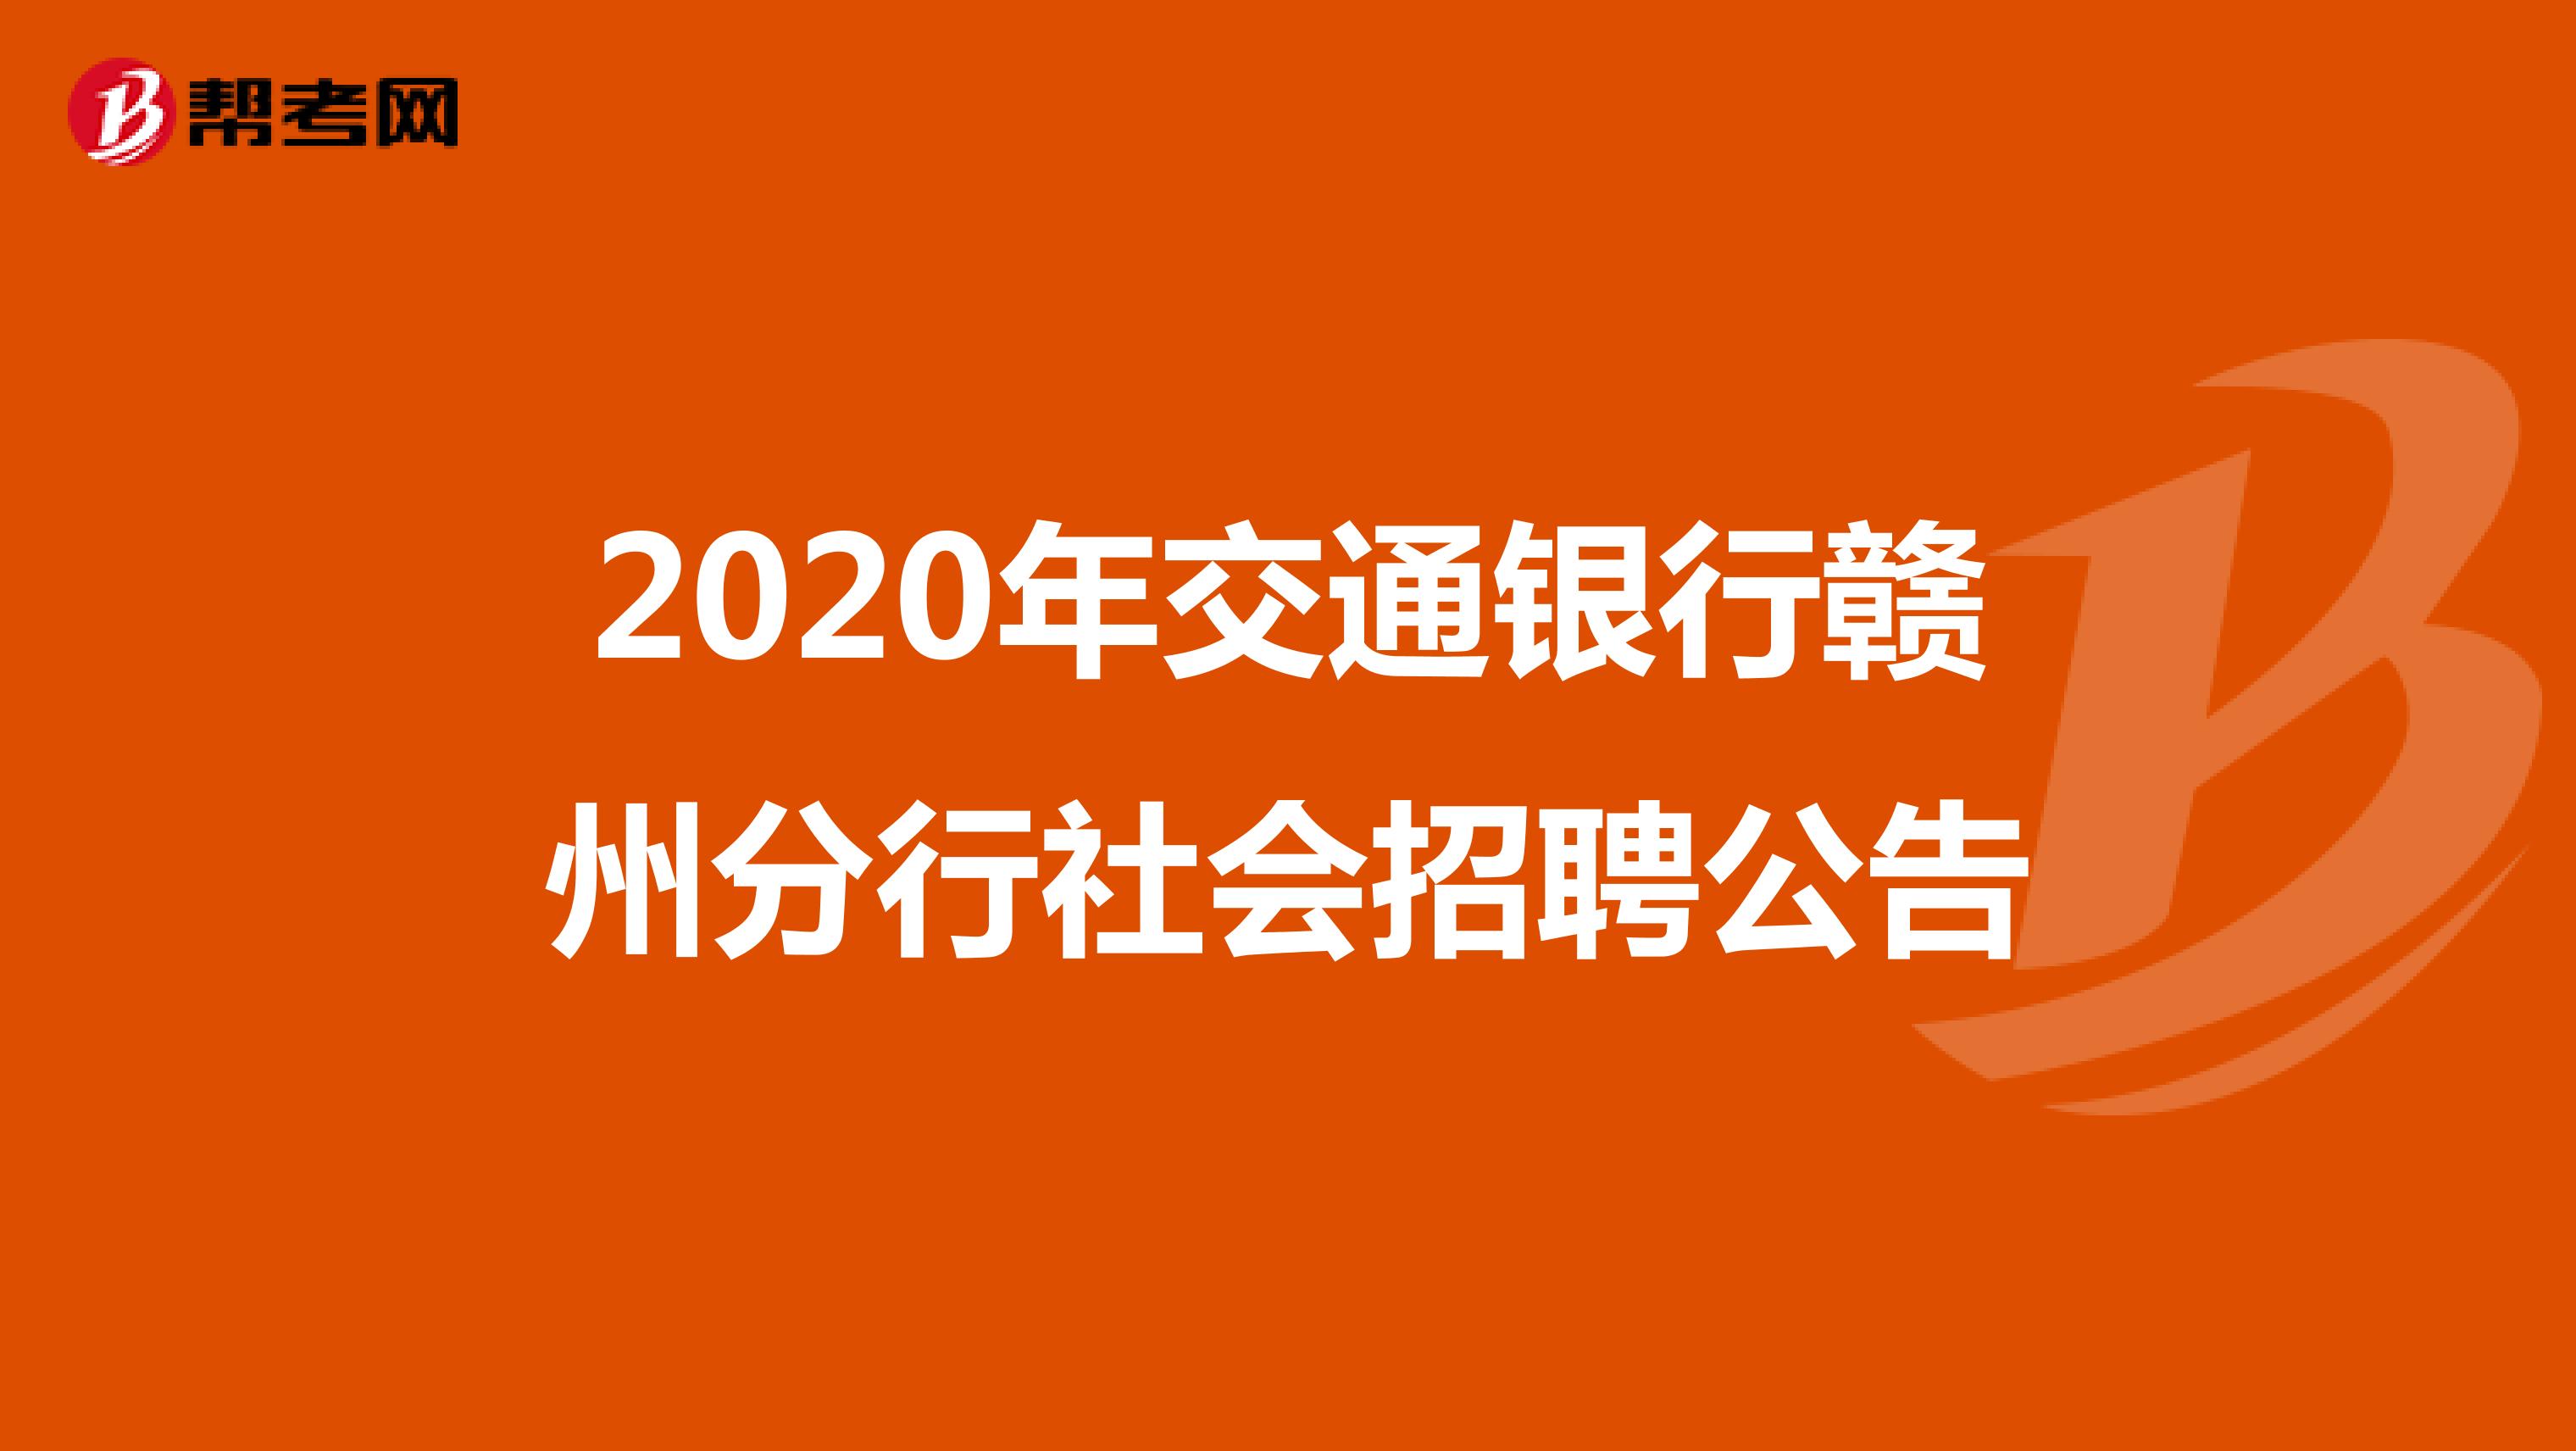 2020年交通银行赣州分行社会招聘公告